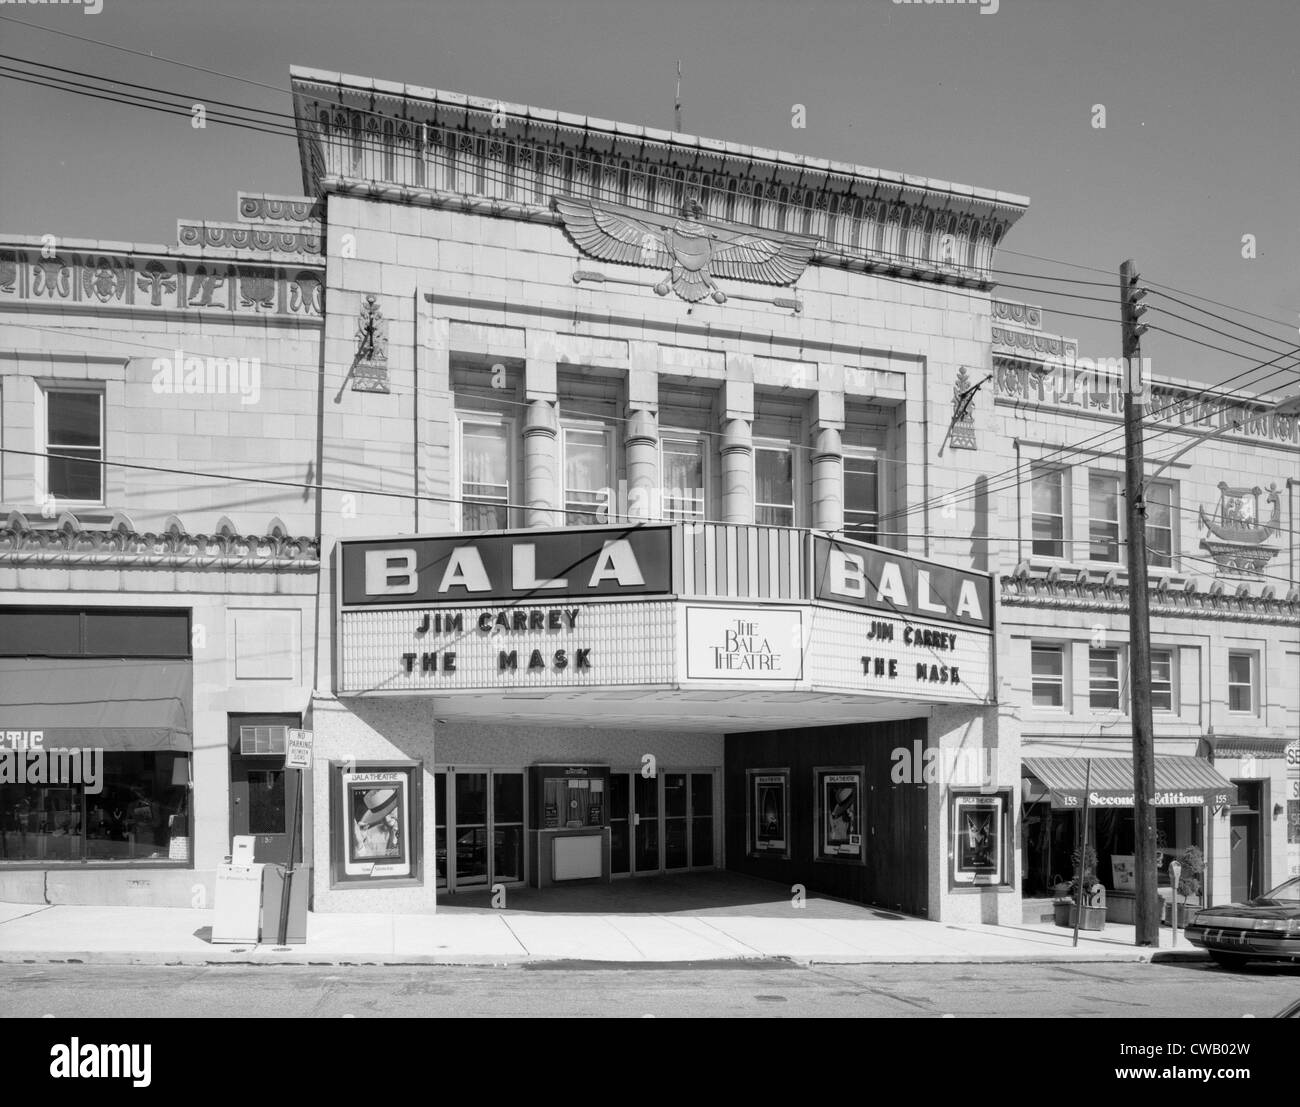 Kinos, dem ägyptischen Theater zeigt die Maske, 157 Bala Avenue, Bala Cynwyd, Pennsylvania, circa 1994. Stockfoto